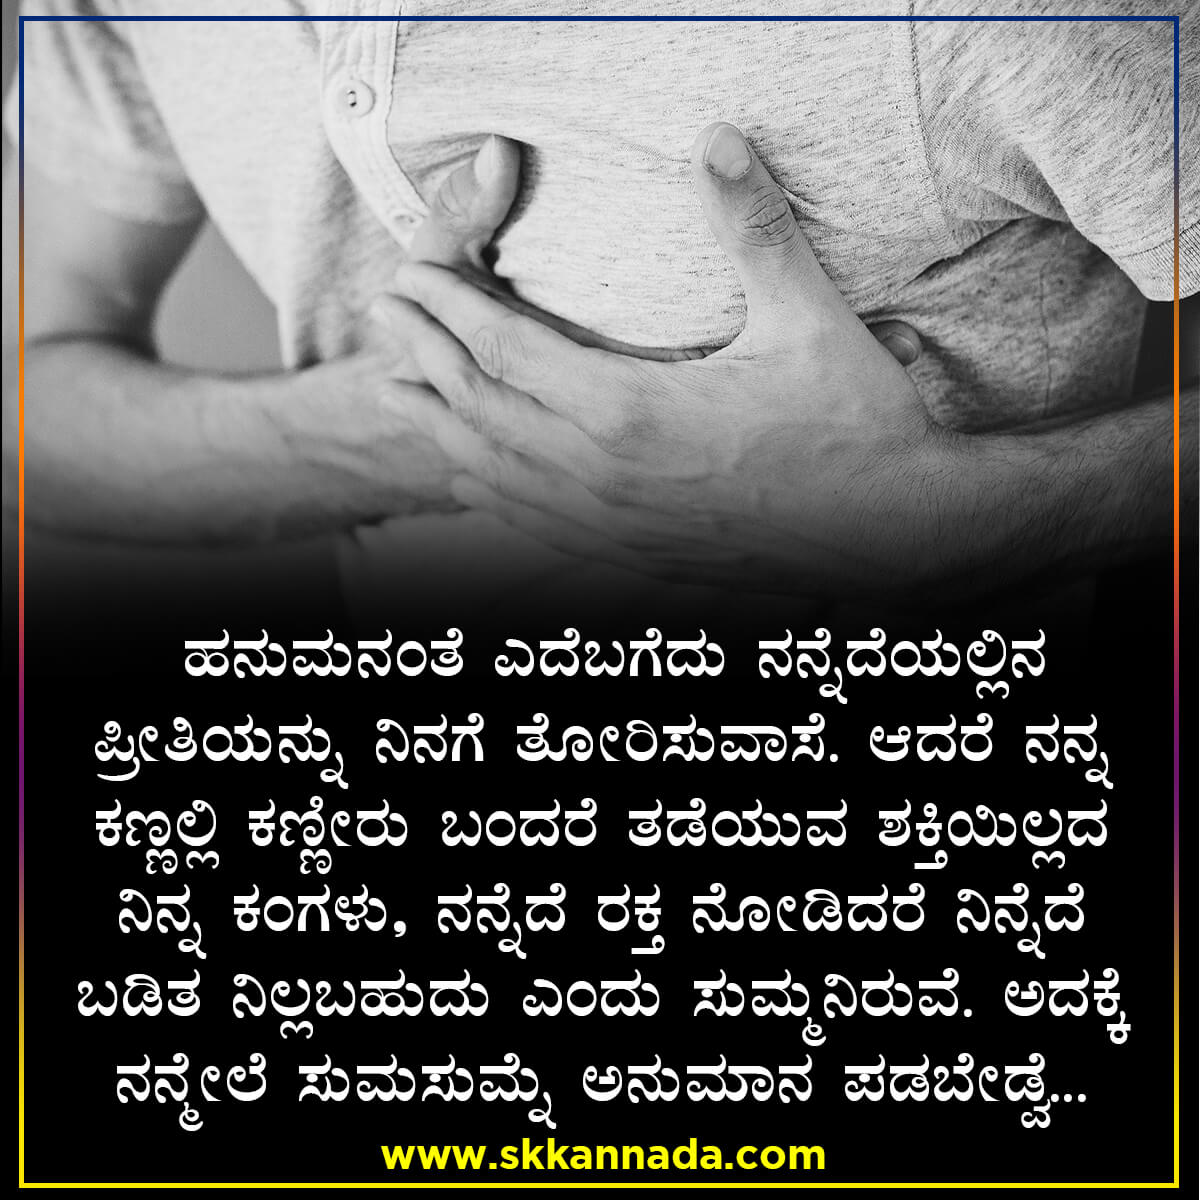 22 ವಿಚಿತ್ರ ಪ್ರೇಮ ಸಂದೇಶಗಳು - Crazy Love Quotes in Kannada - feeling